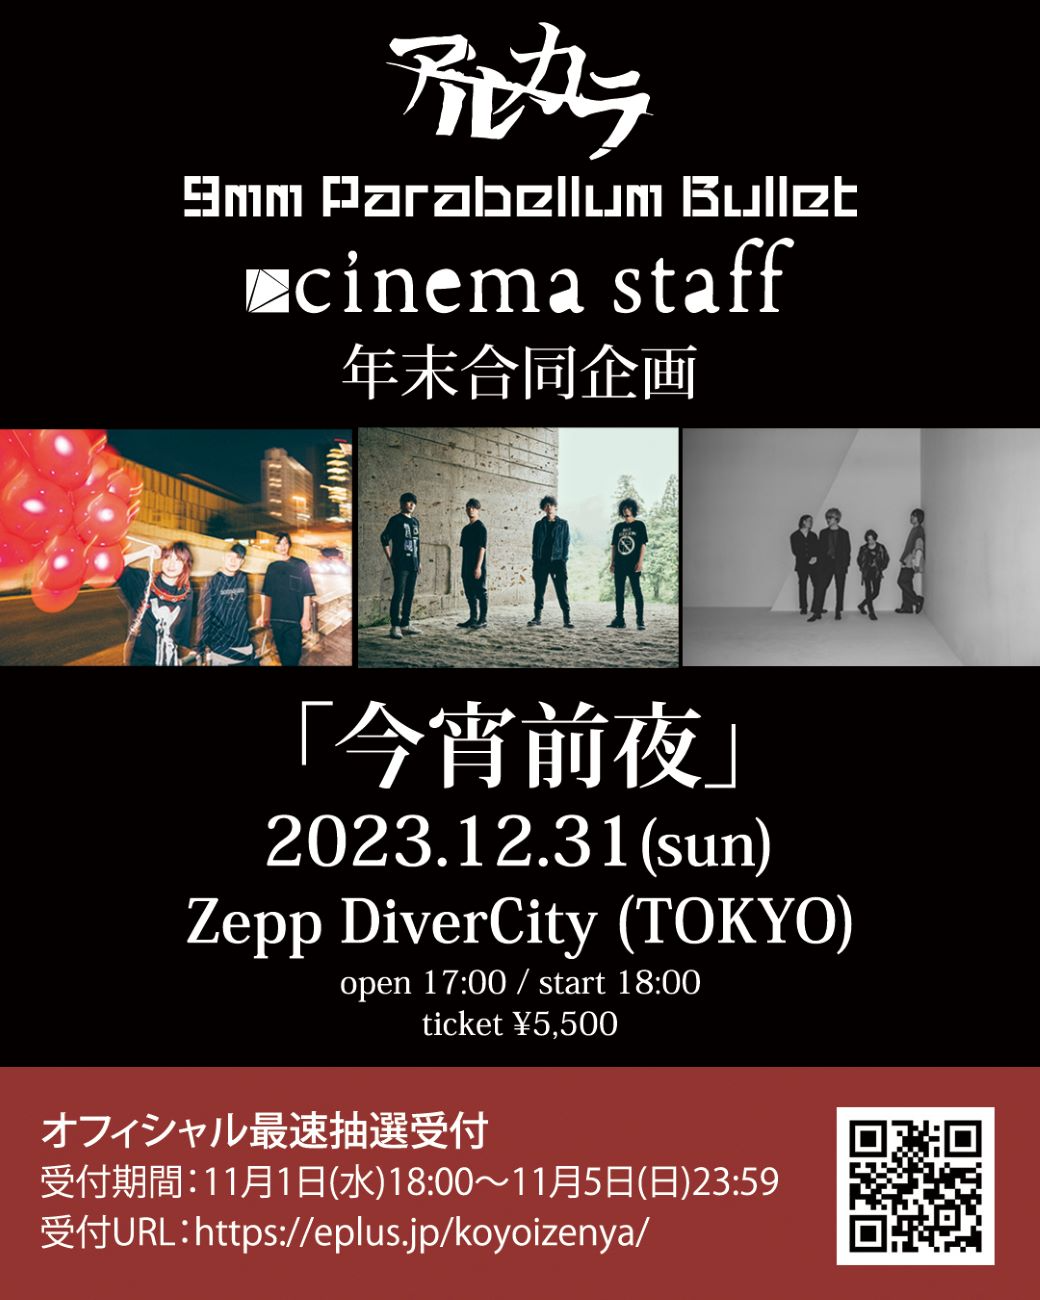 アルカラ / 9mm Parabellum Bullet / cinema staff (五十音順)